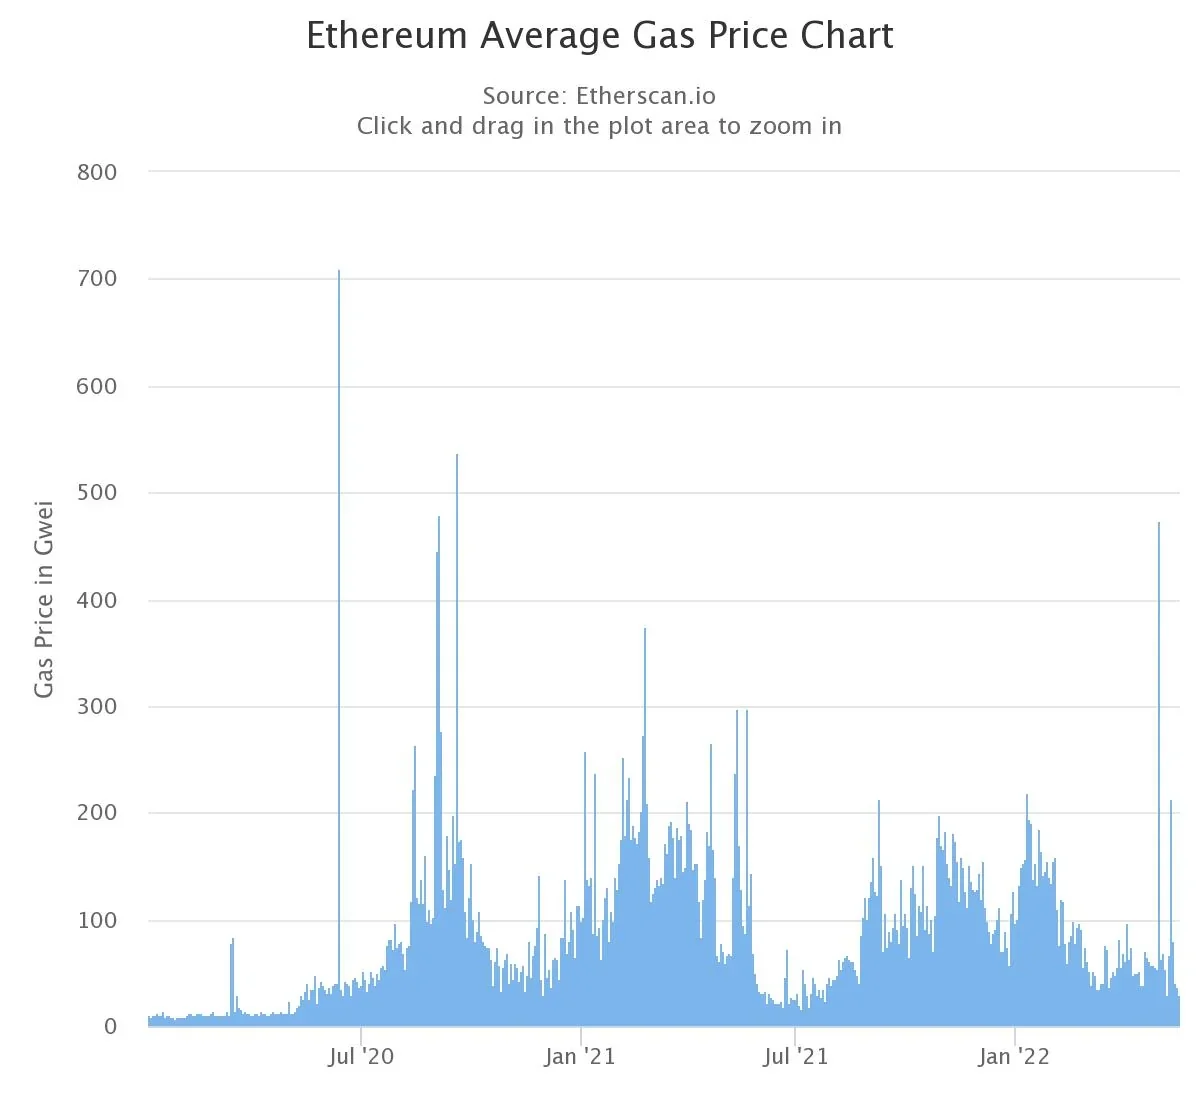 Tasas medias de gas en Ethereum desde el 2 de enero de 2020 hasta la actualidad. Fuente: Etherscan.